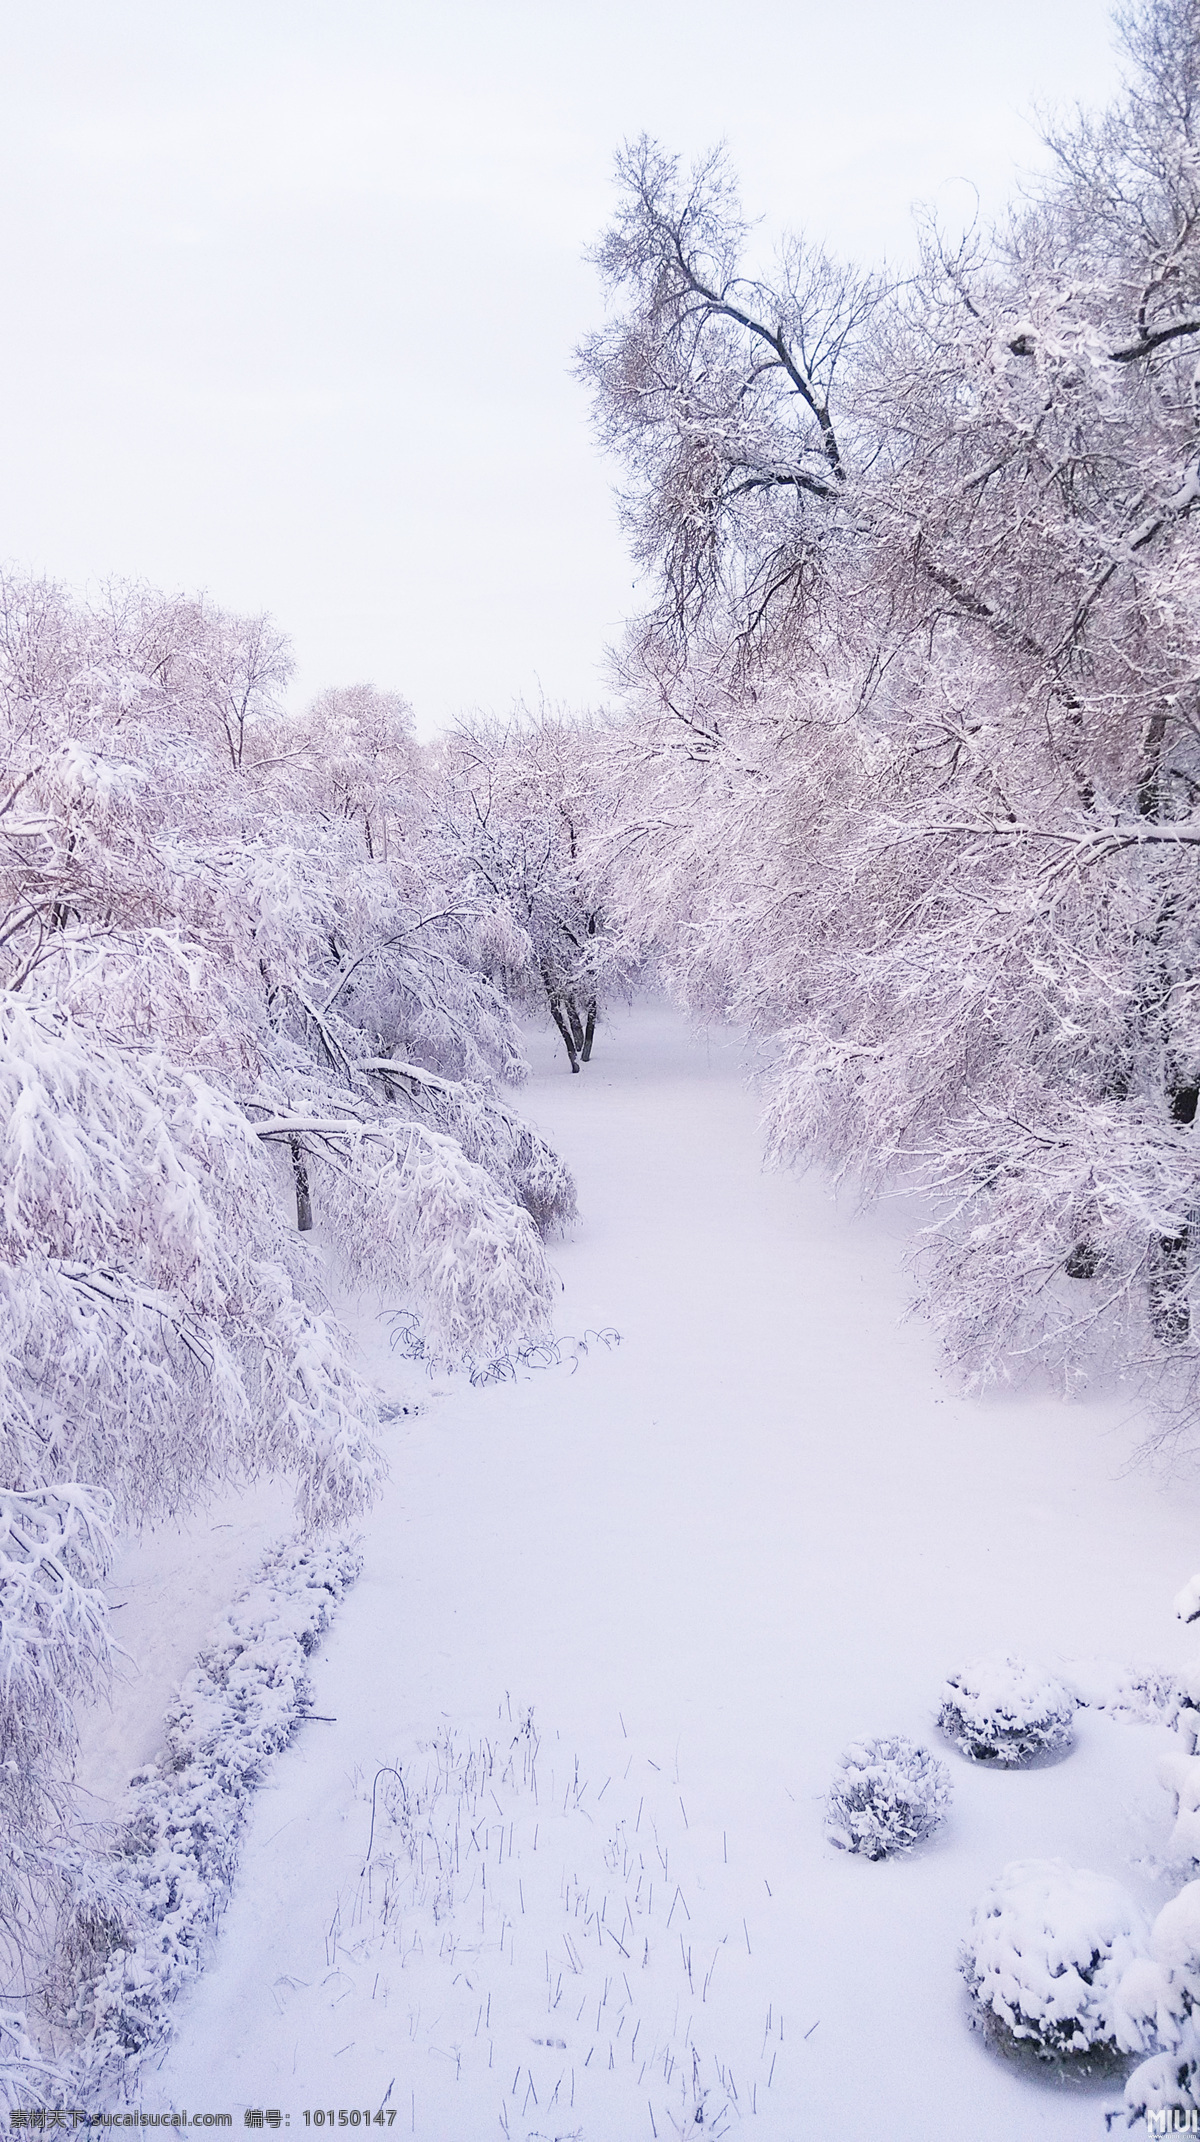 大雪 无垠 白色 冬天 大雪无垠 白色的冬天 雪 暴雪 松树 雪松 北国风光 雾凇 树林 雪景 冰雪 自然景观 自然风景